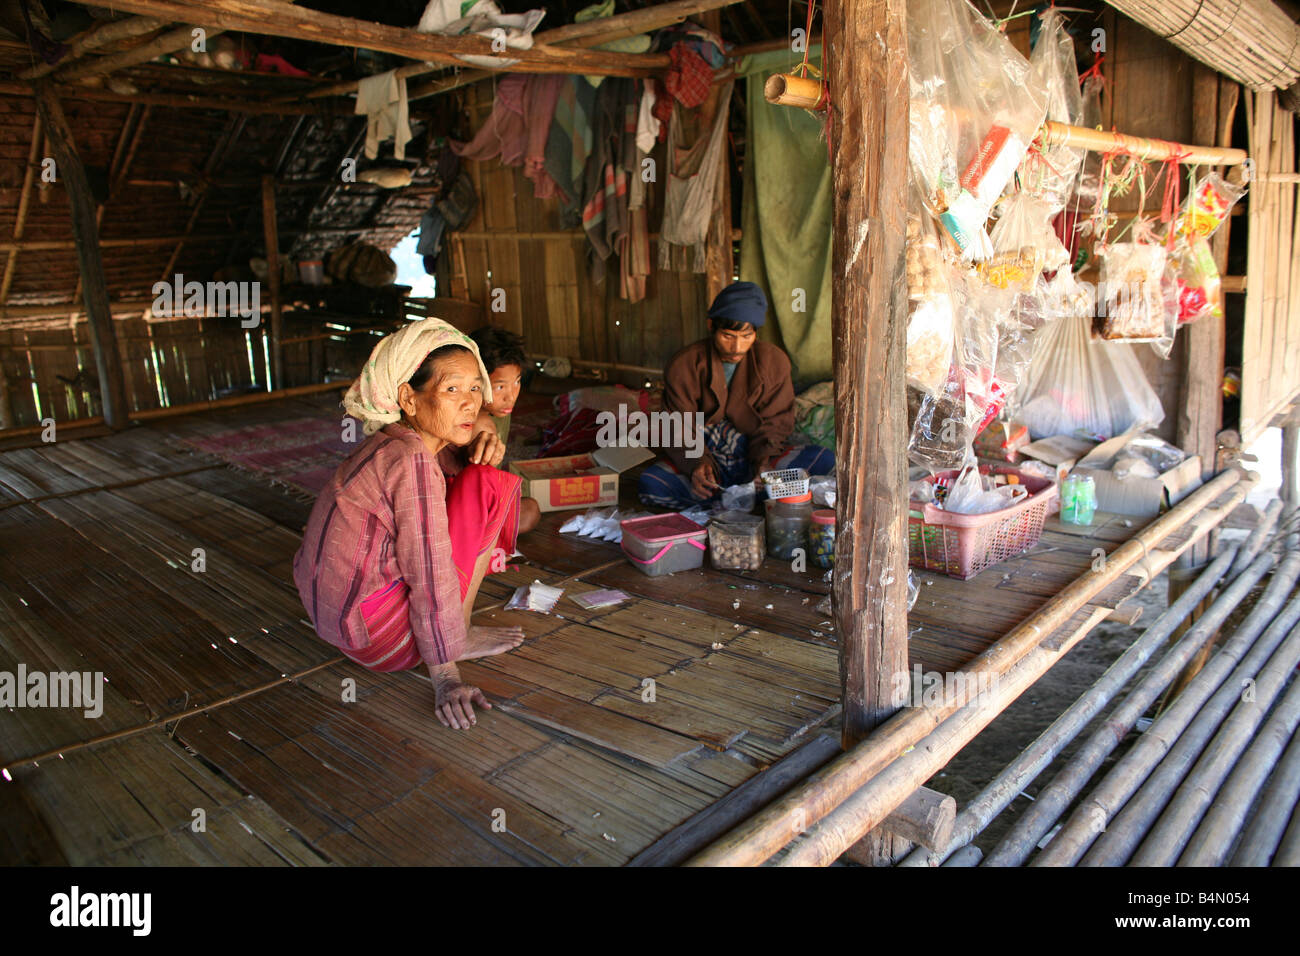 Birmanischen Familie in einer Hütte in den Vertriebenen Dorf nahe der thailändischen Grenze In Myanmar Birma Tausende von Menschen siedelten sich in der Nähe von der Grenze als Folge der Unterdrückung in ihrem Heimatland um 200 birmanischen Vertriebenen, in La niedergelassen haben pro Her ein Dorf auf der burmesische Seite der Grenze zu Thailand in der Nähe der thailändischen Stadt von Mae Sot sie weigern sich, die Grenze zu überqueren, weil sie in ihrer Heimat dieser Flüchtlinge bleiben wollen unterstützen die Rebellen Bewegung mit dem Namen Straflosigkeit Karen National Liberation Army betreibt in östlichen Birma Jan 2007 Stockfoto